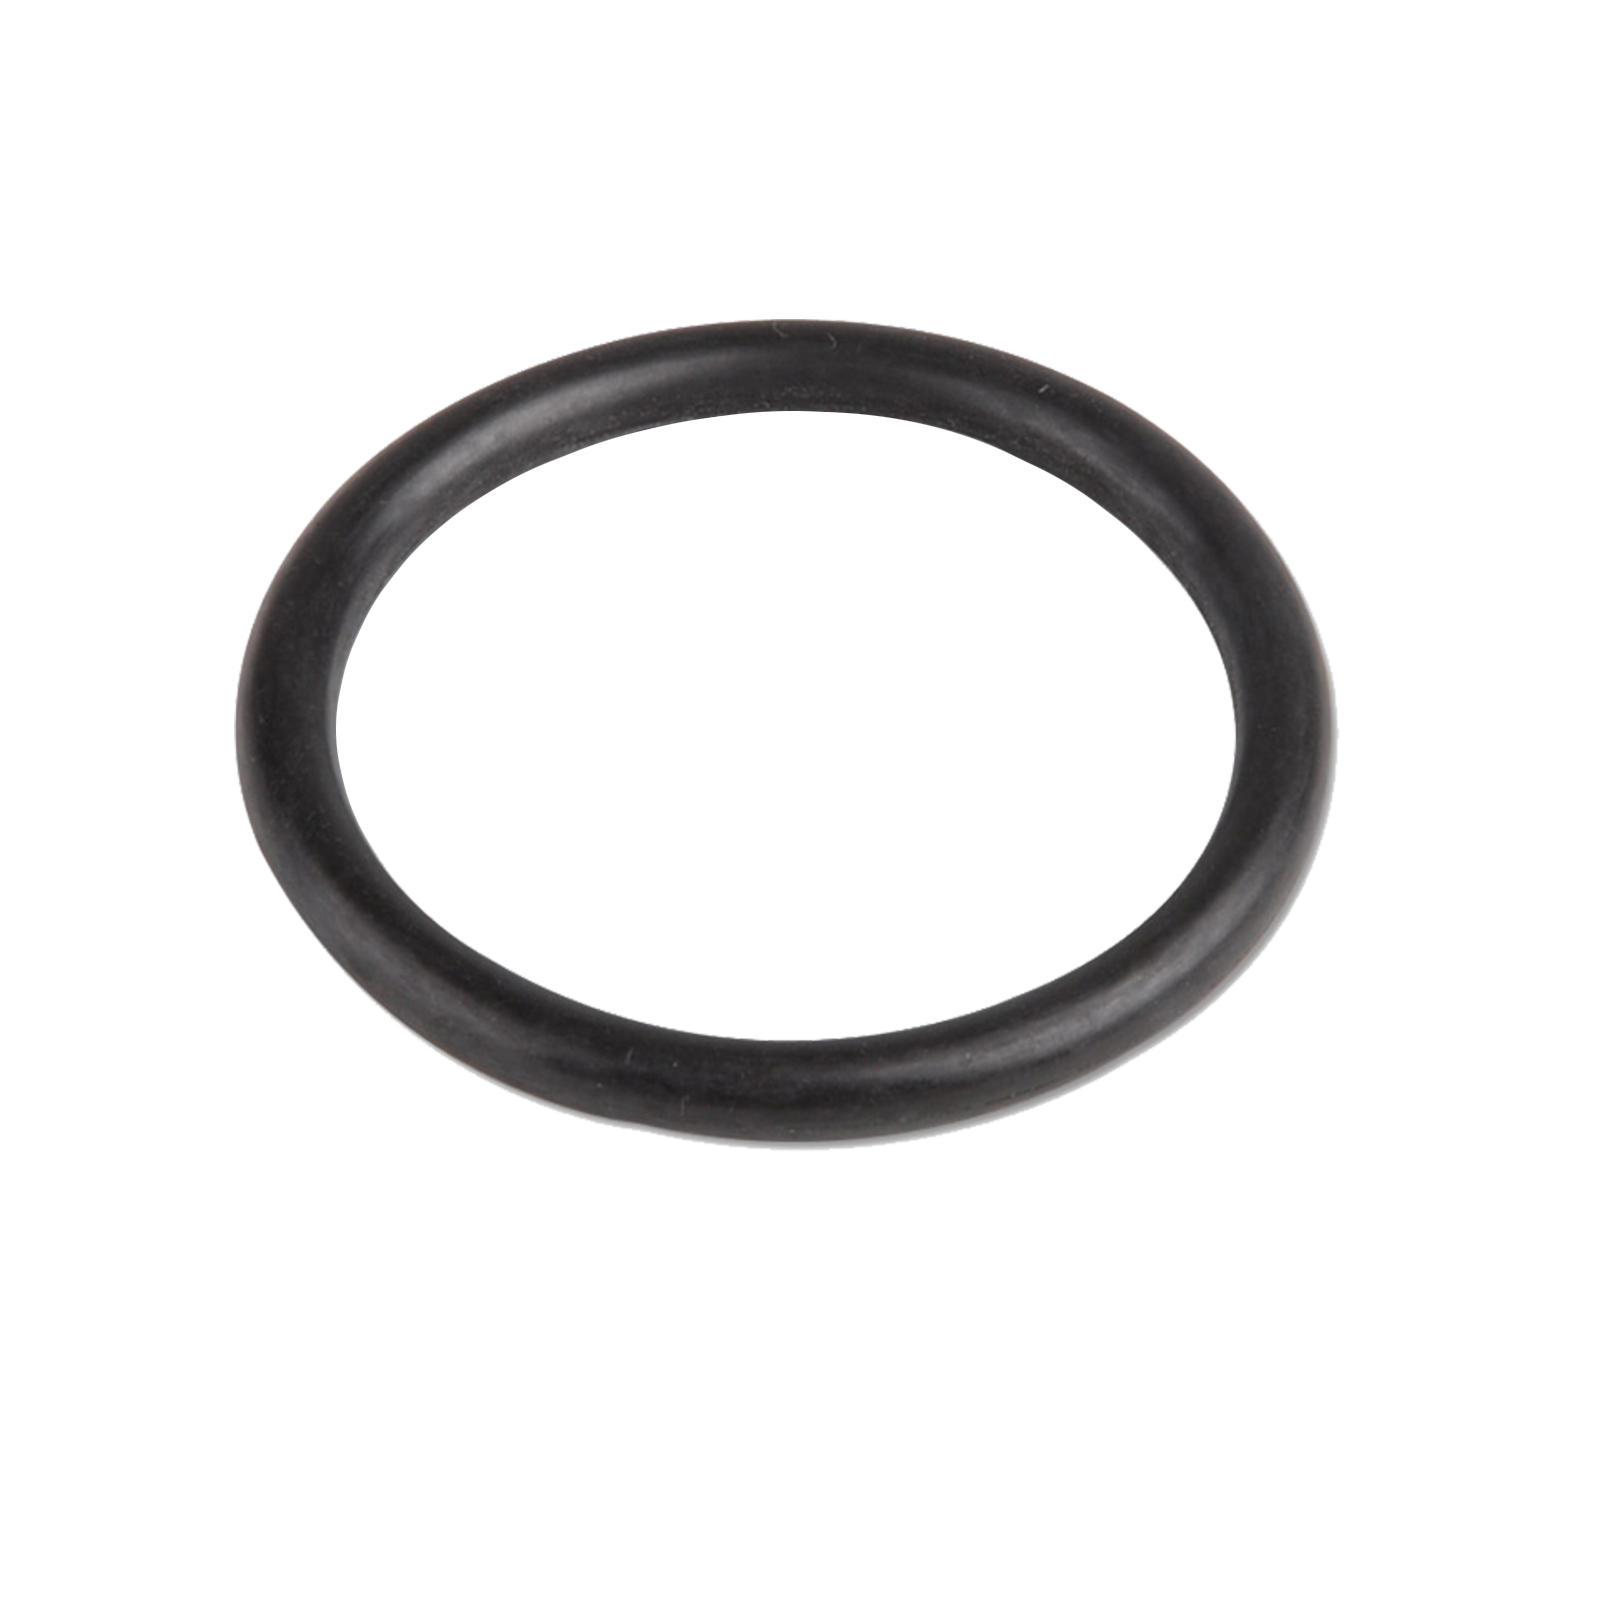 NBR O-Ring 8 x 1 mm (NBR 70)  O-Ringe Shop - Günstige O-Ringe vom  Markenhersteller